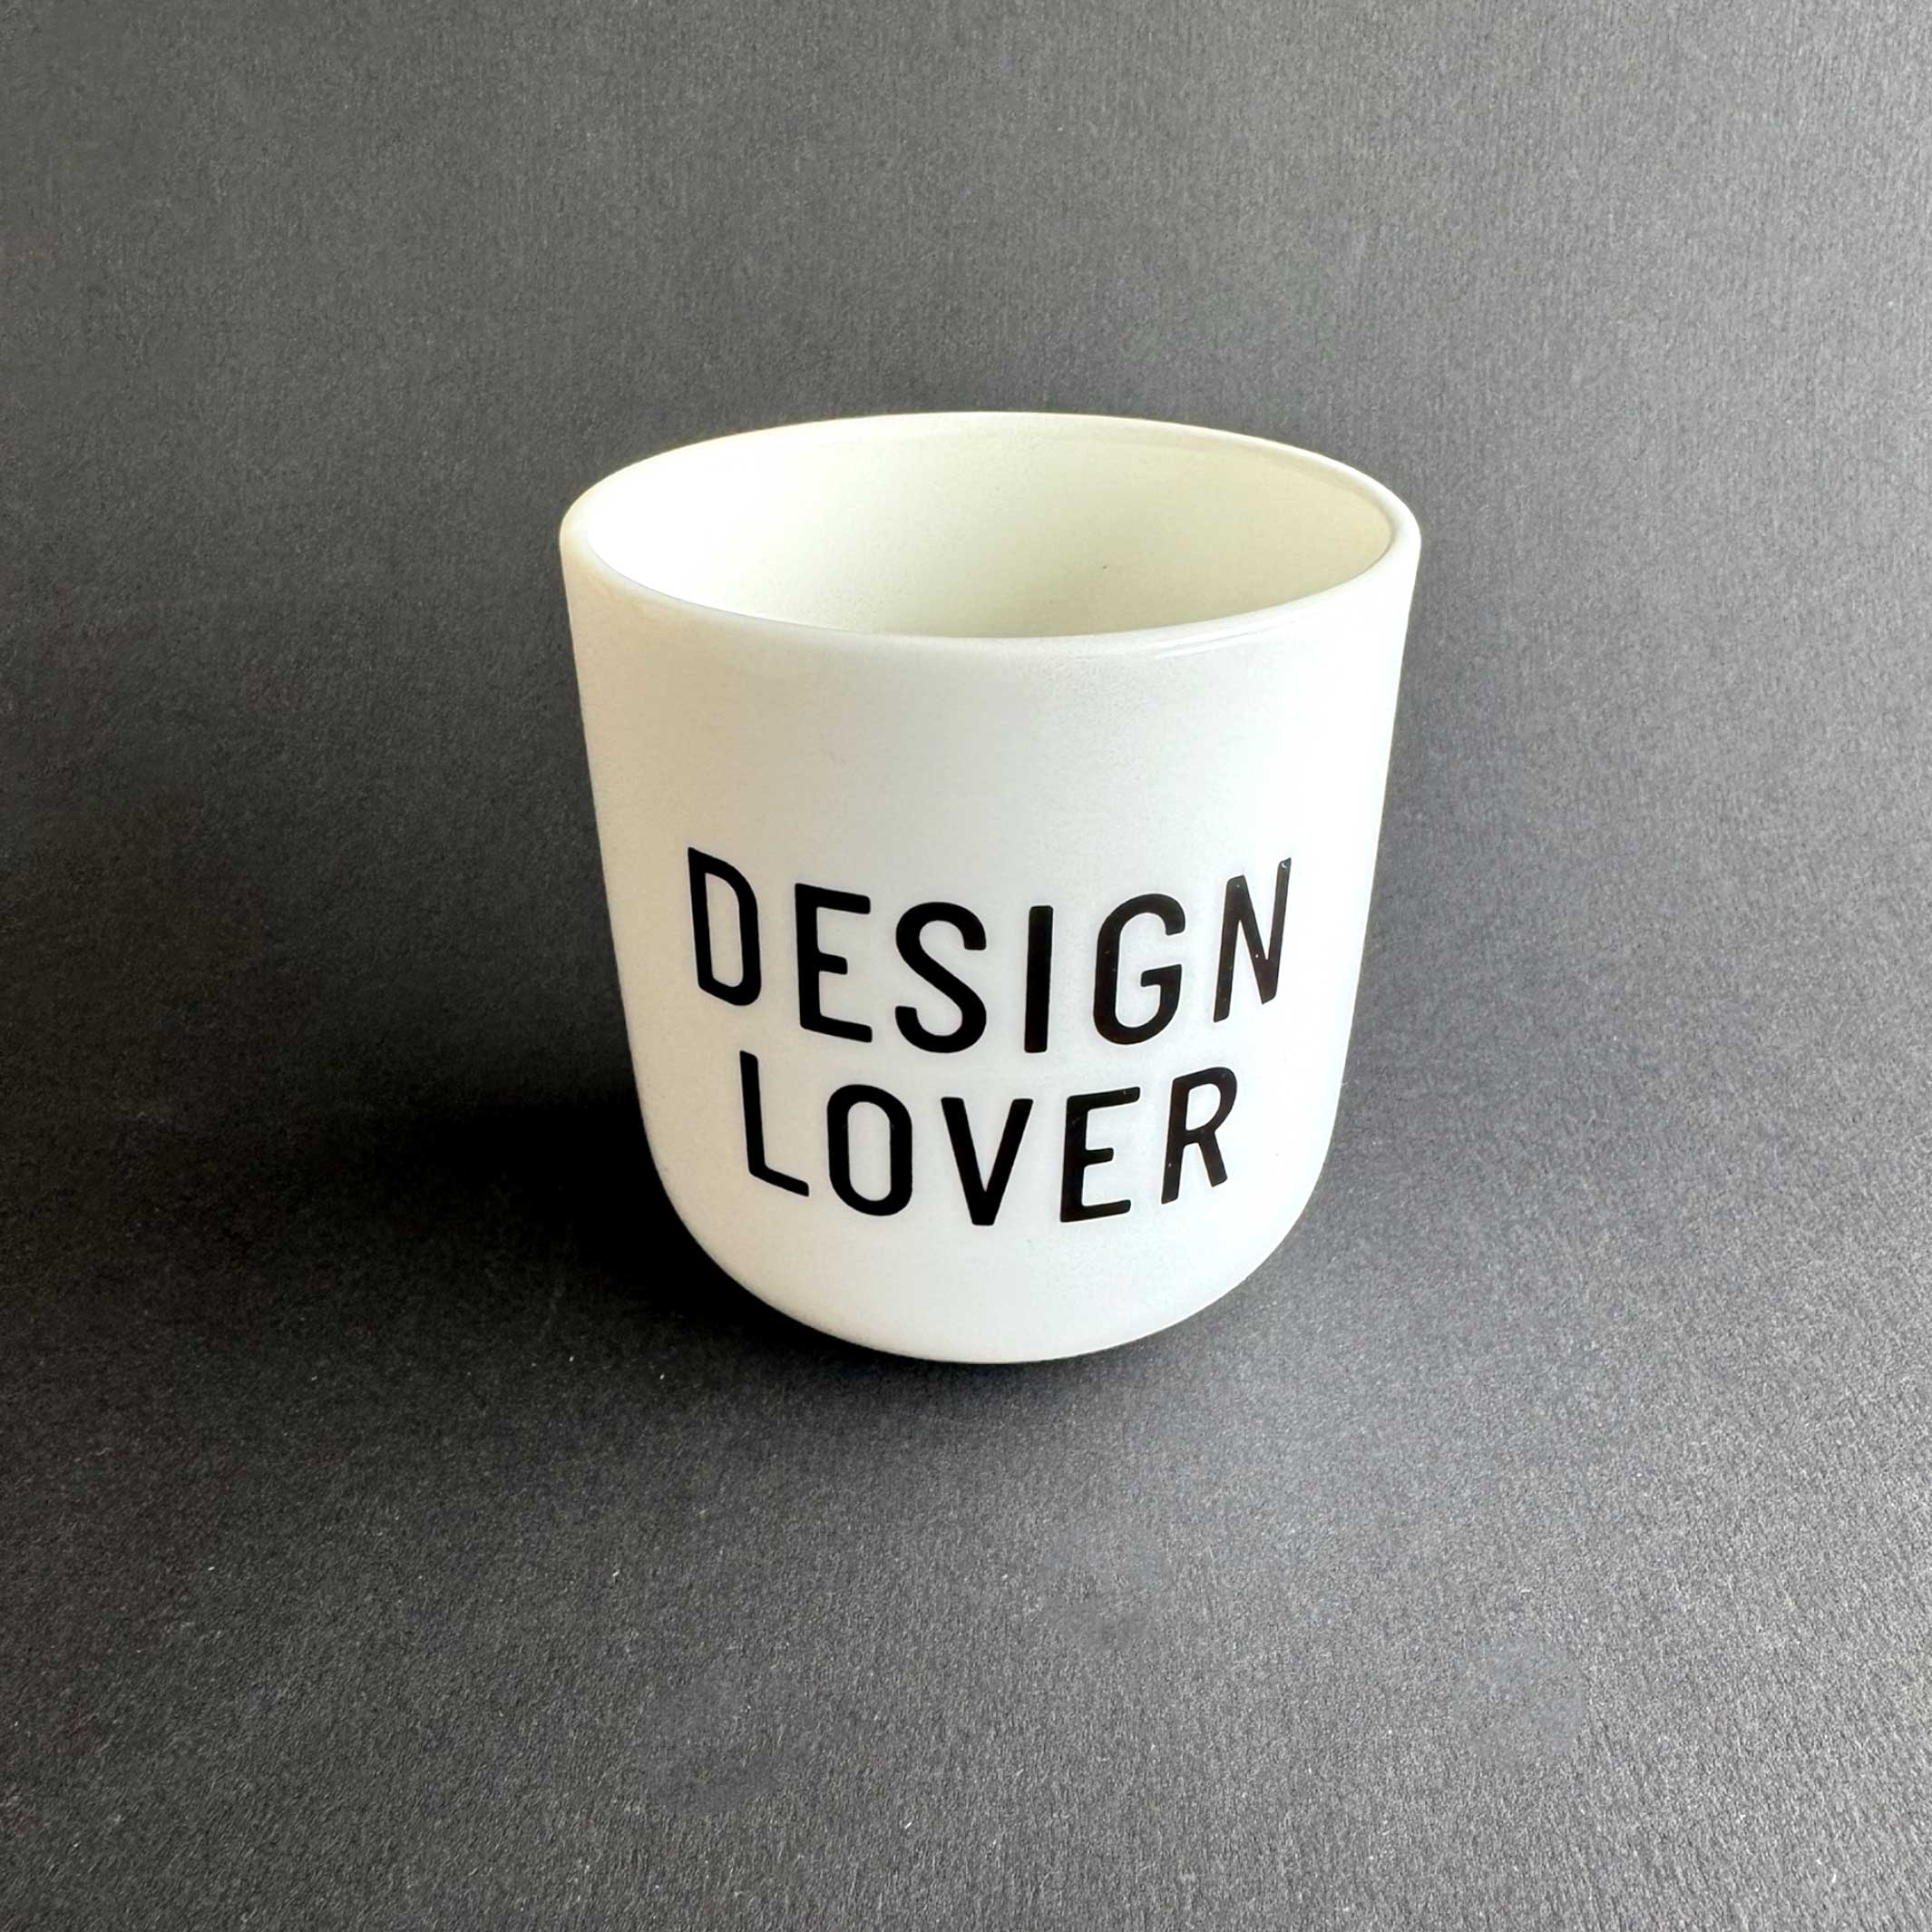 DESIGN LOVER | weisser Kaffee- & Tee-BECHER mit schwarzer Typo | PLTY